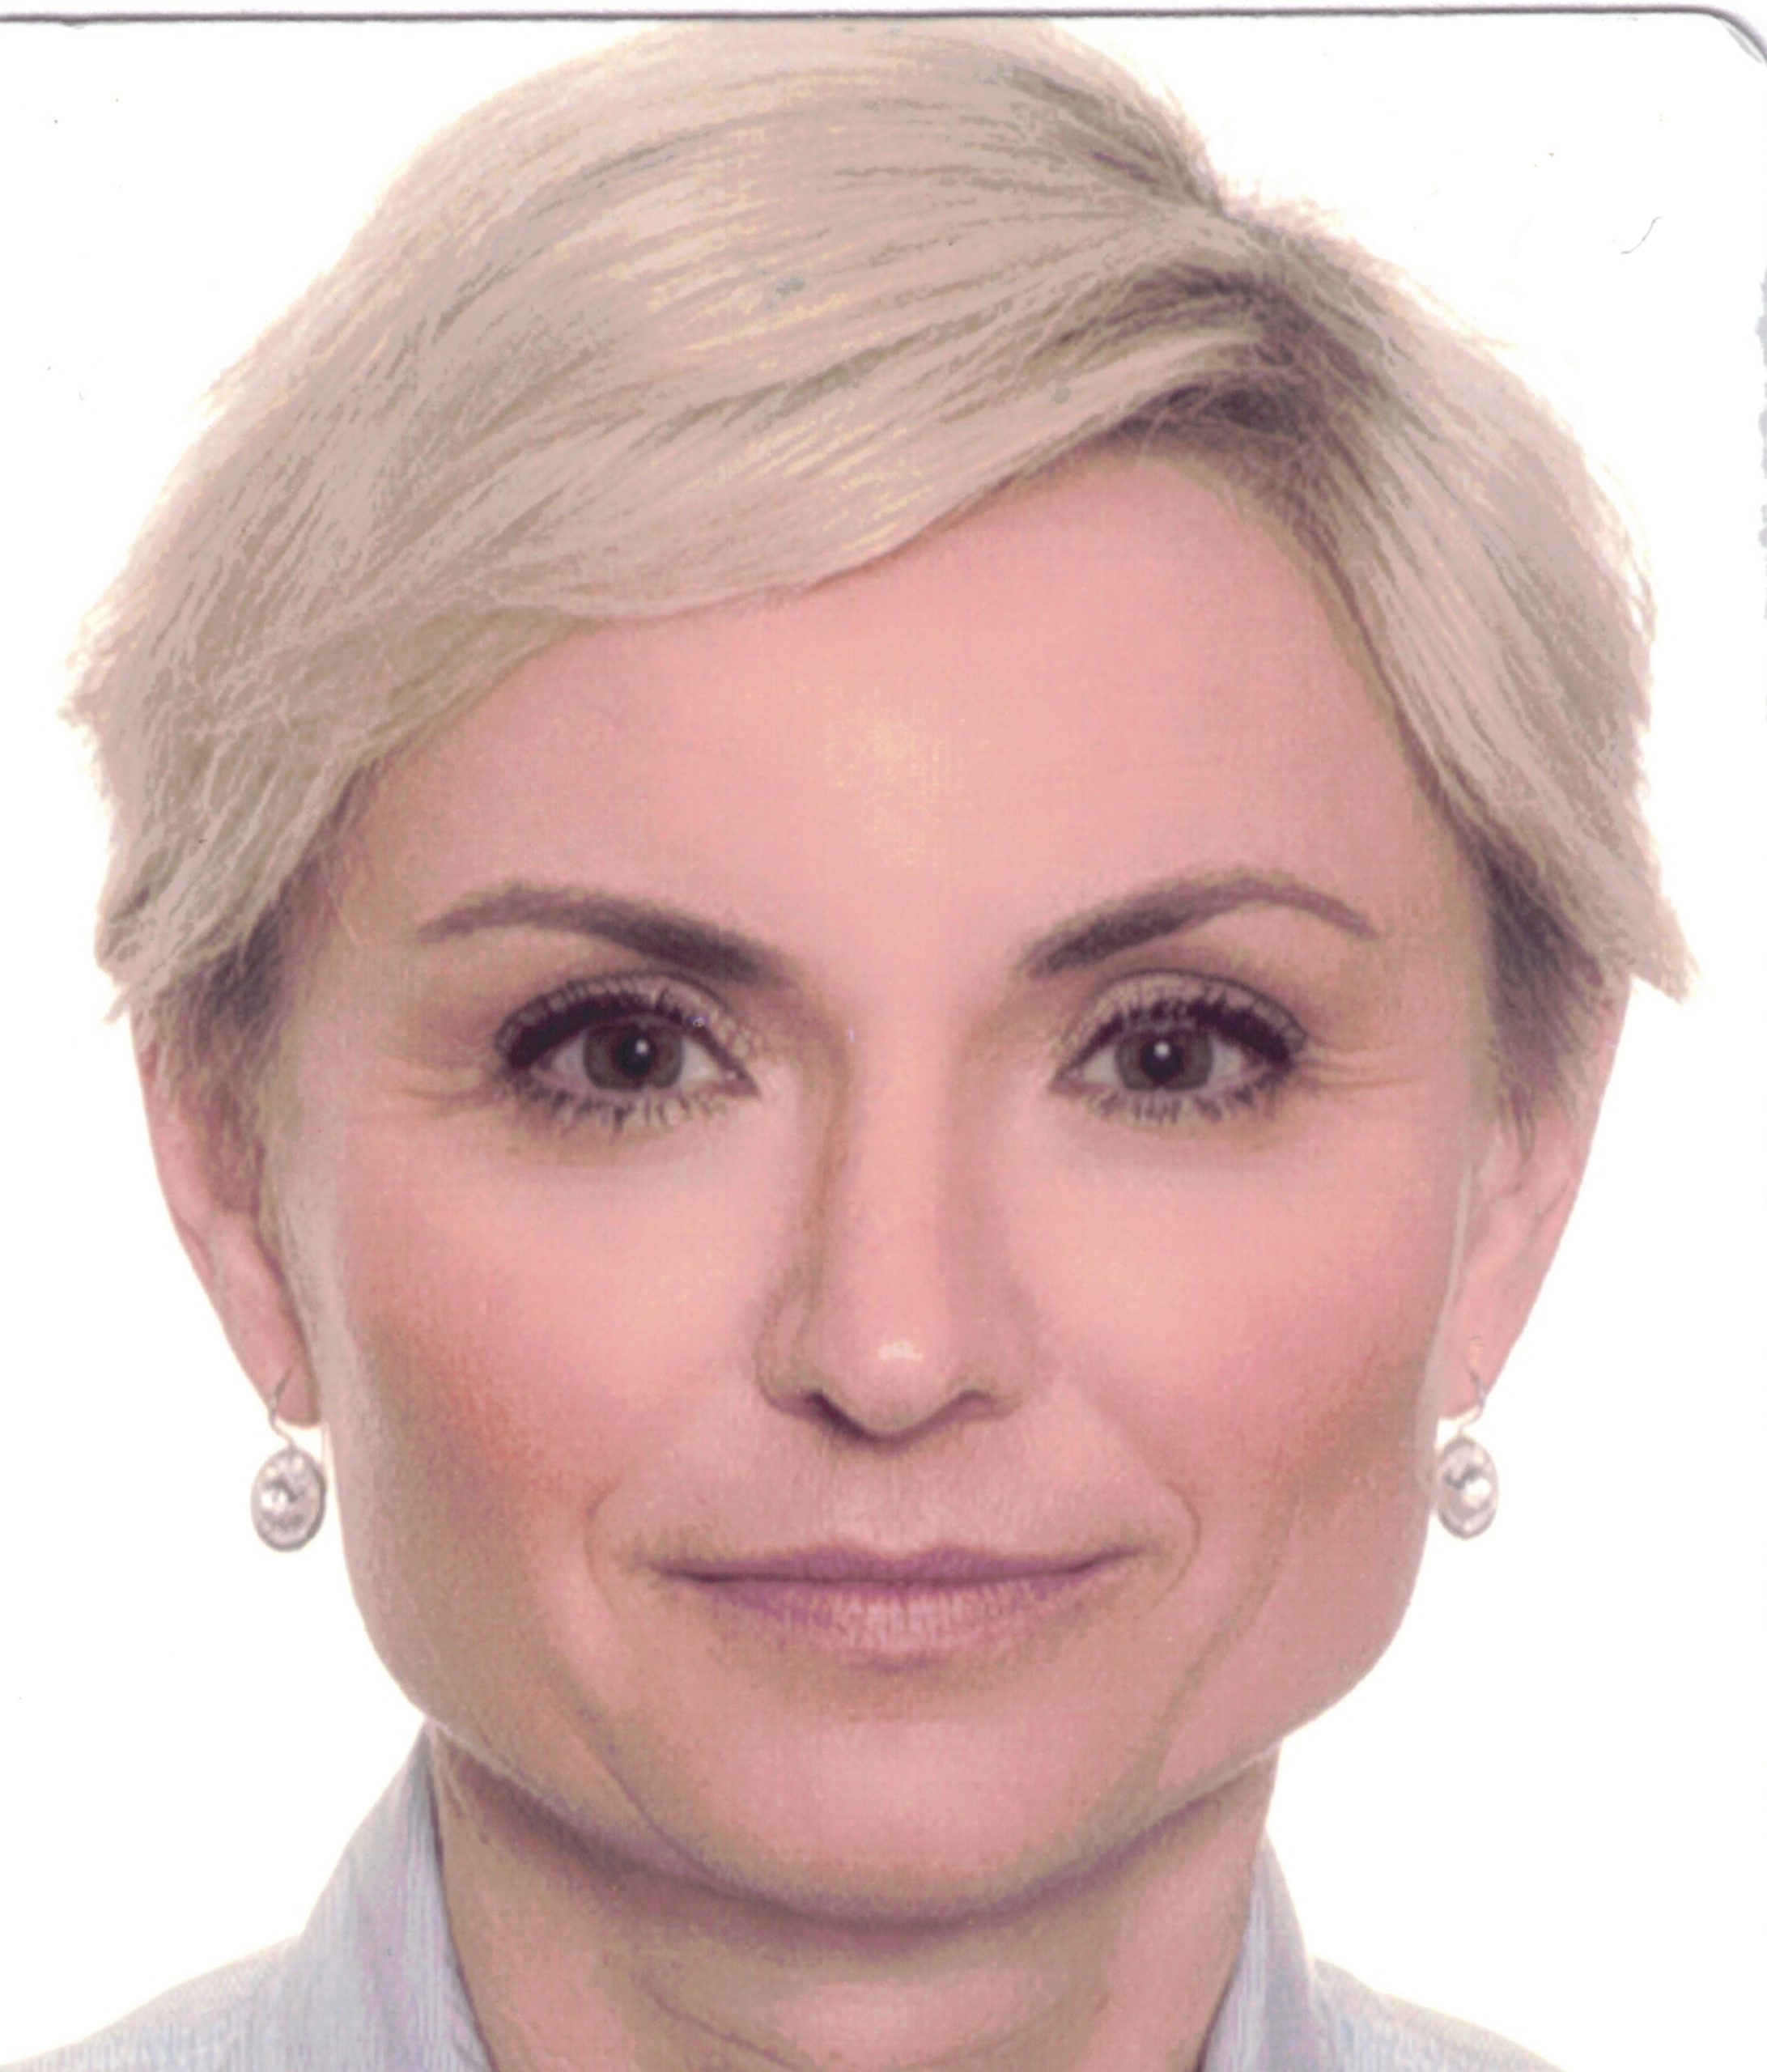 Angela Rösch